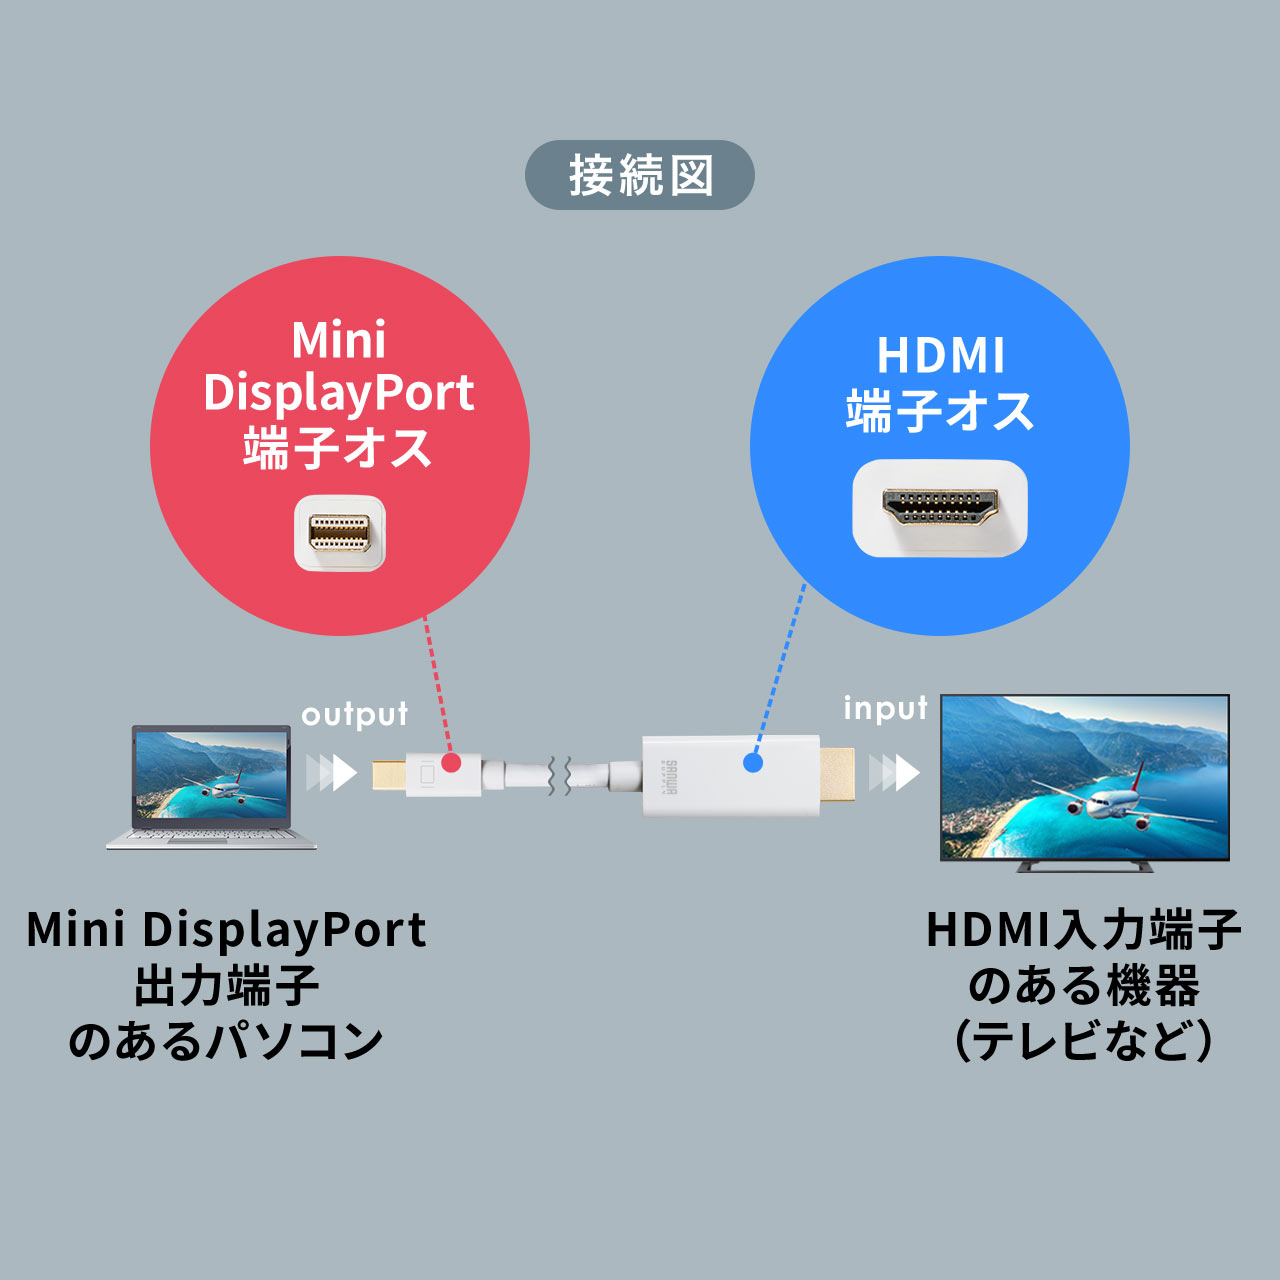 Mini DisplayPort-HDMI変換ケーブル（4K/60Hz対応・HDR対応・2m・ホワイト） 500-KC033-2